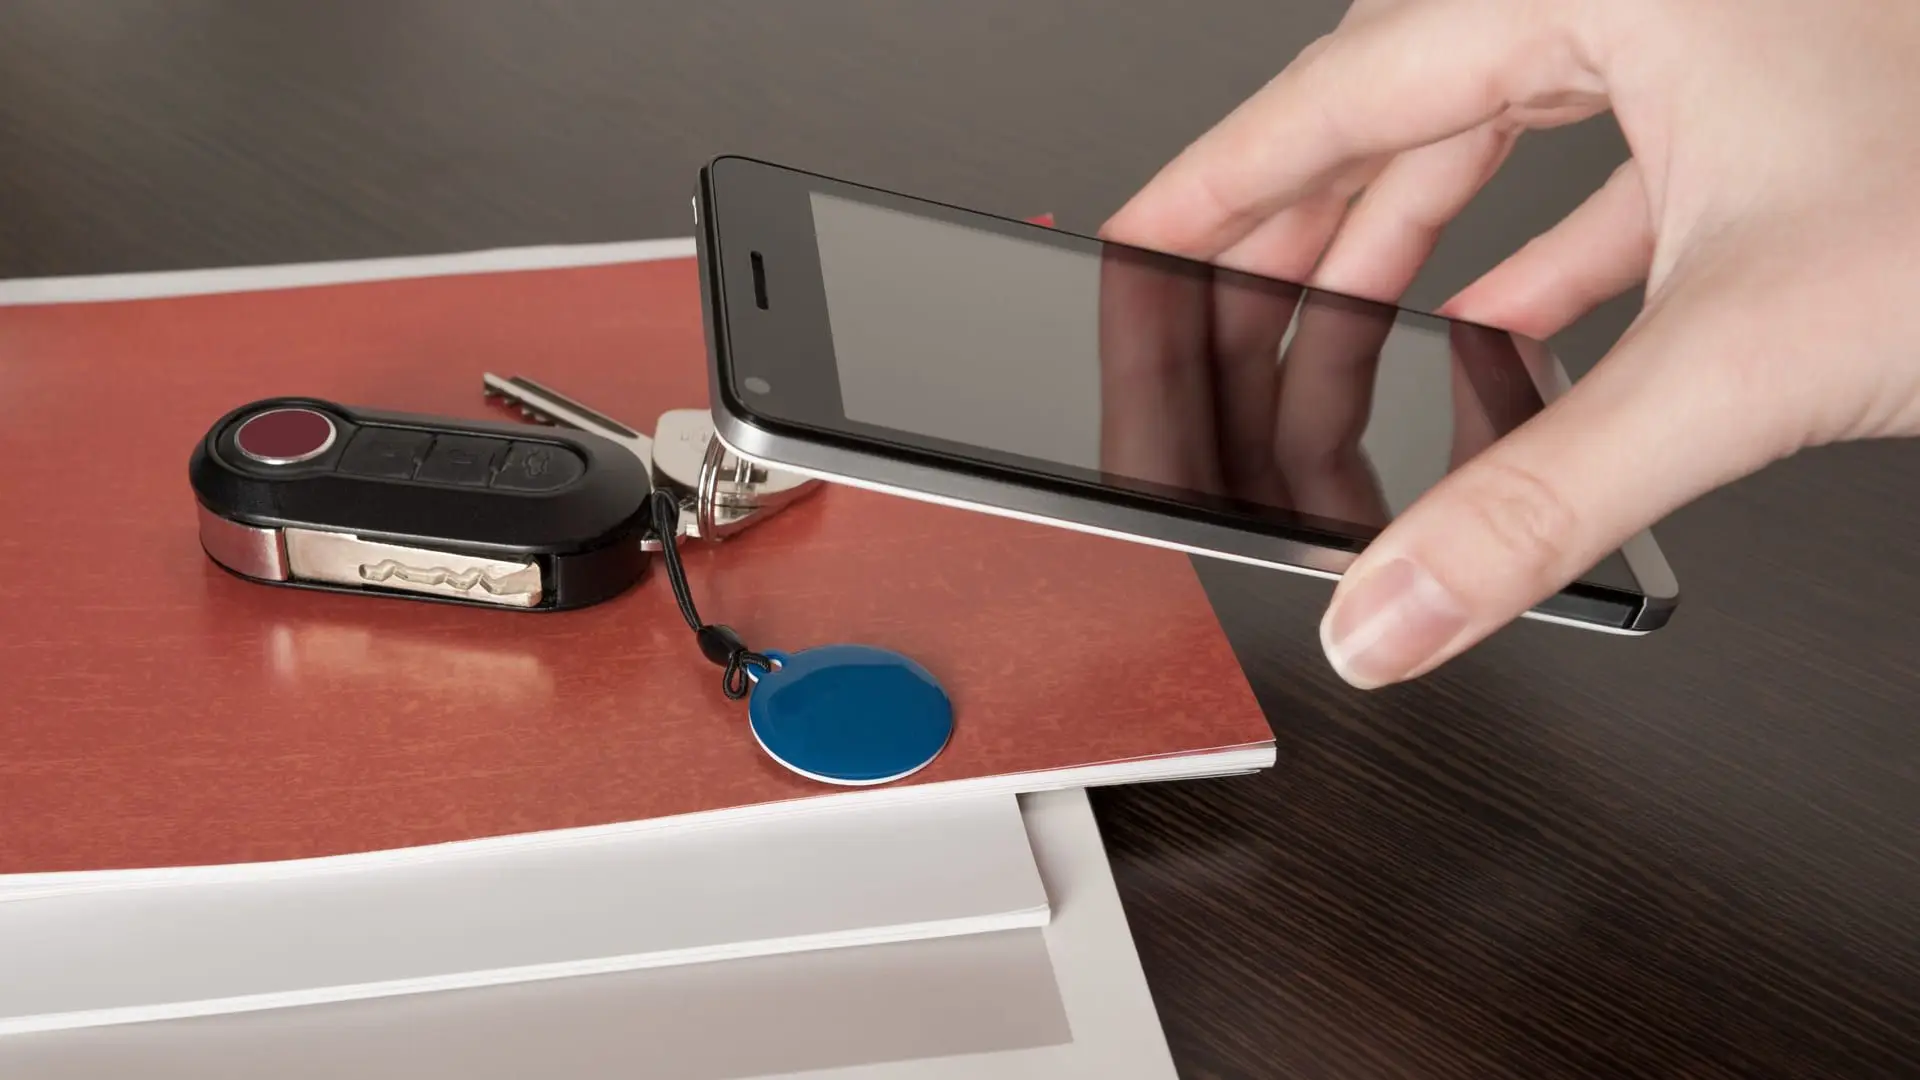 Mulher segura celular com tecnologia NFC próximo a chave de casa